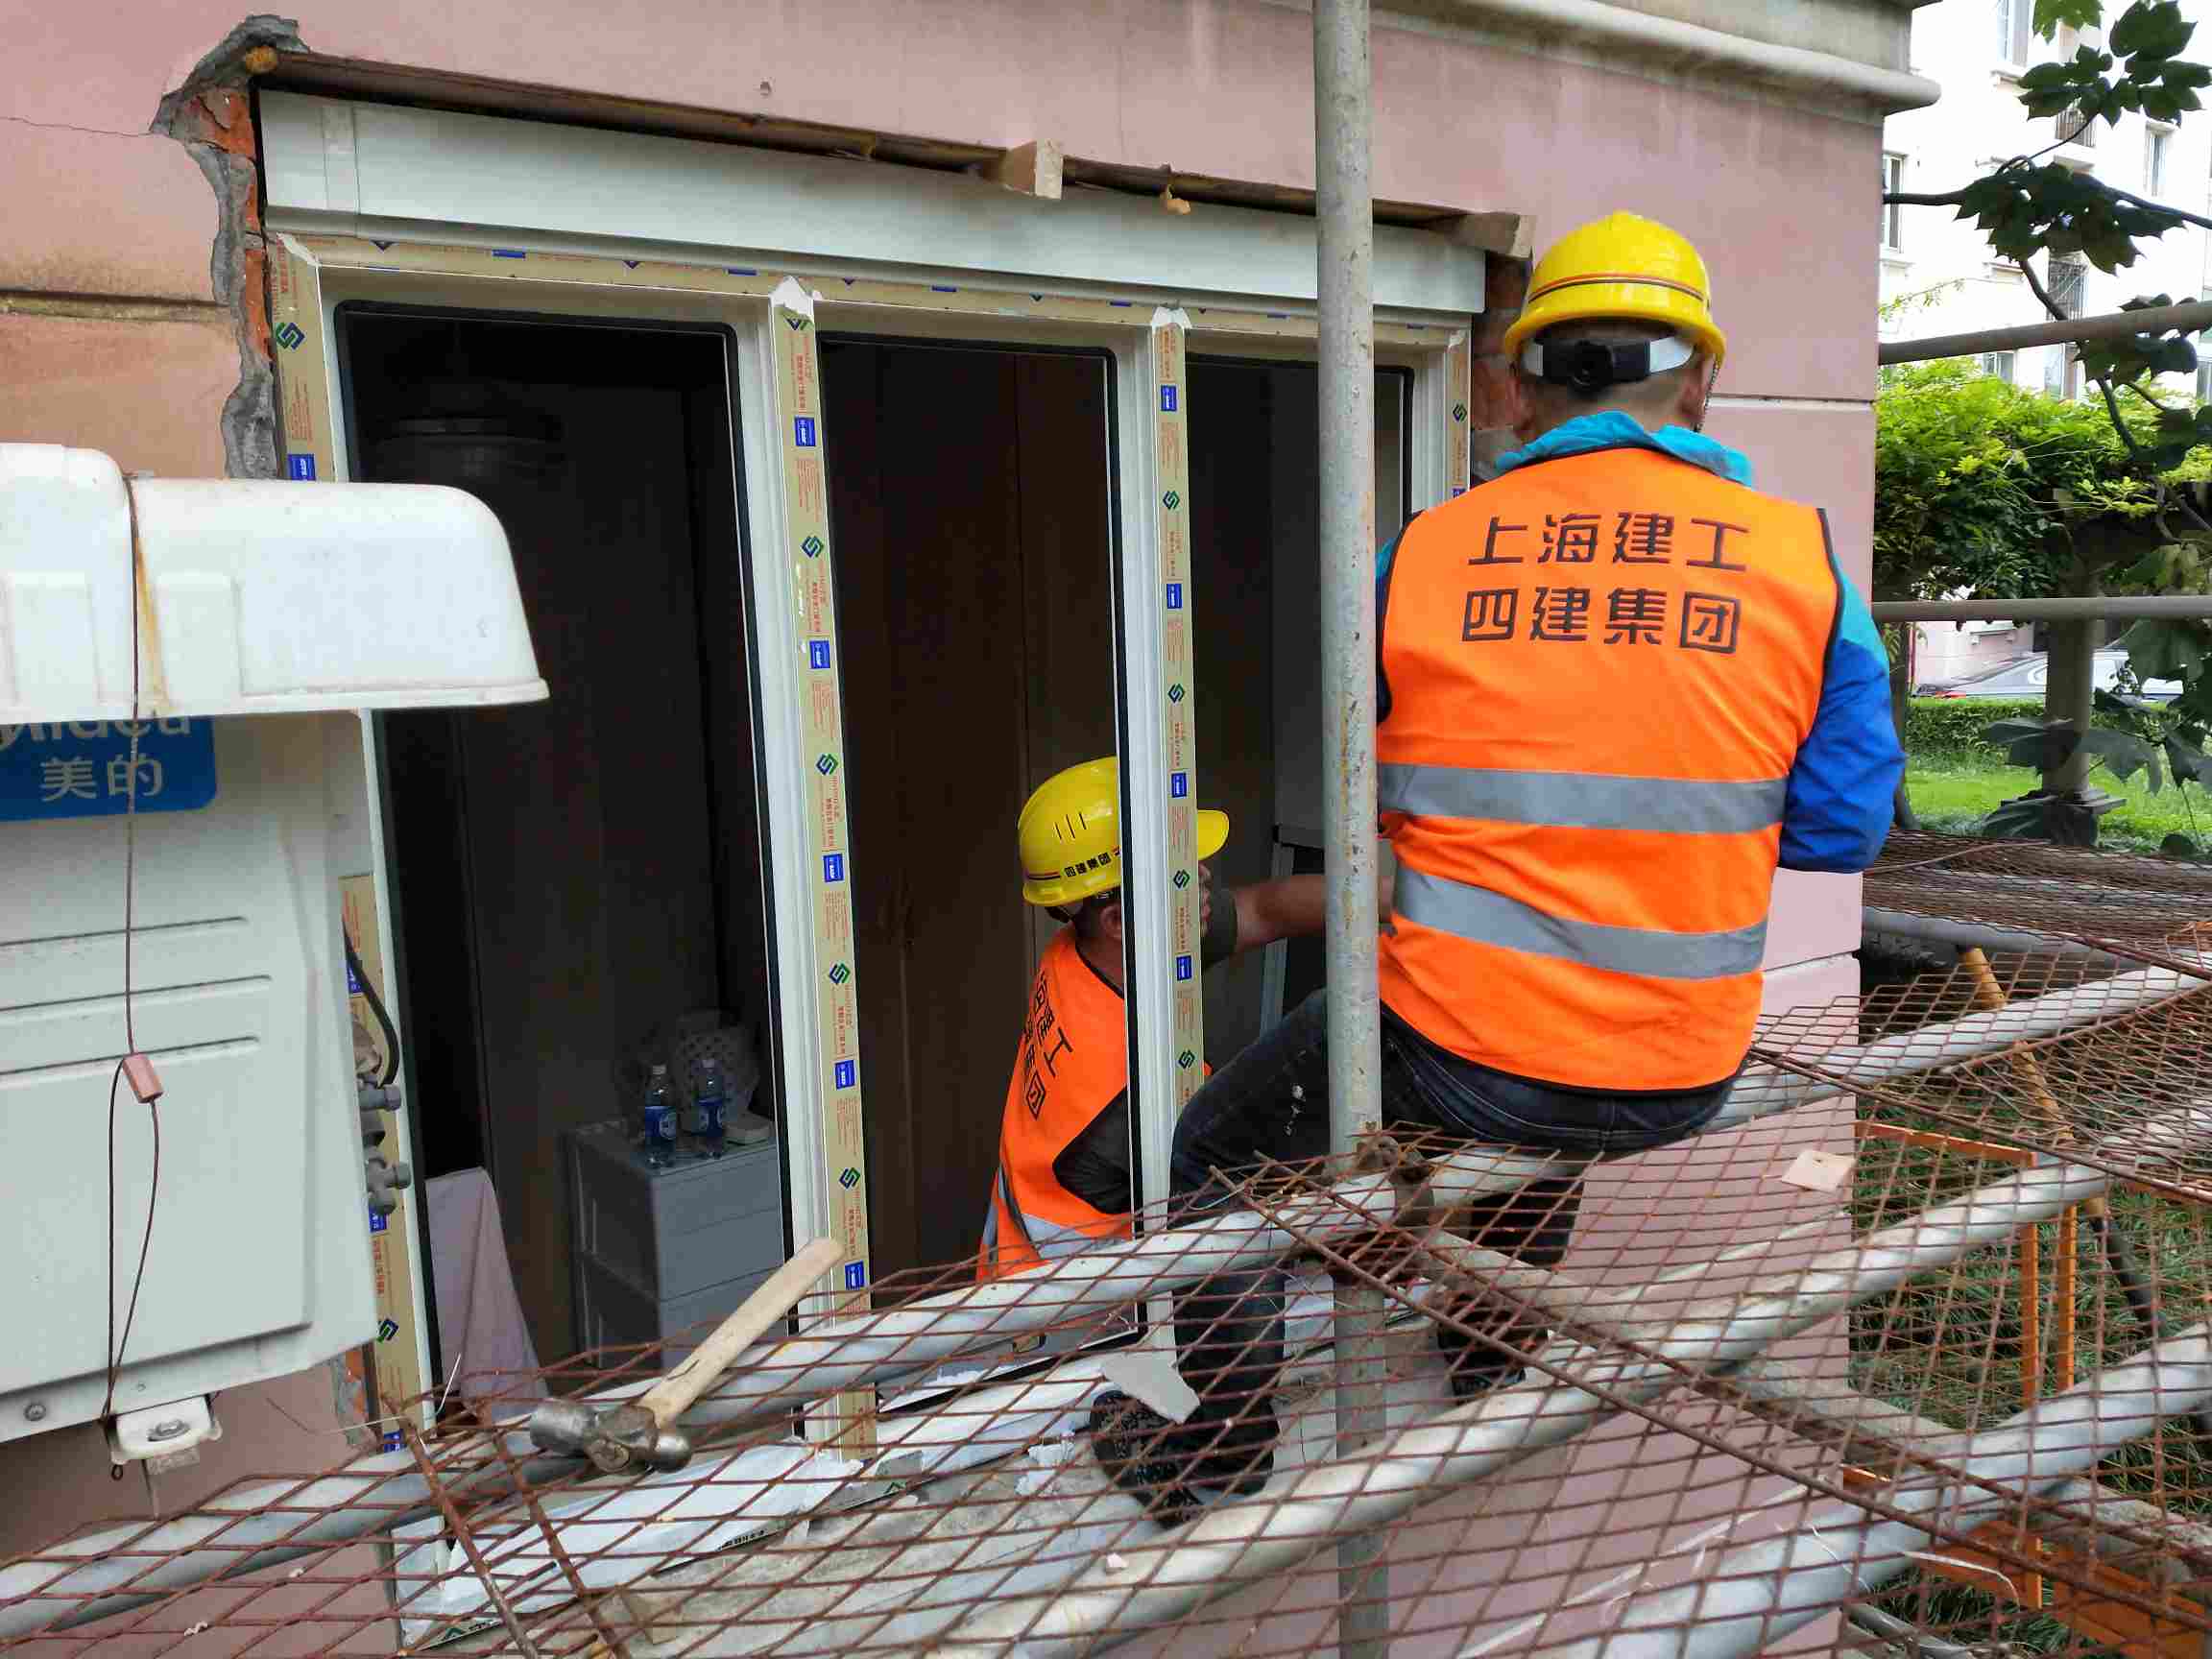 上海闵行区上海招安装窗户工人和搬运工,工资面议,联系方式